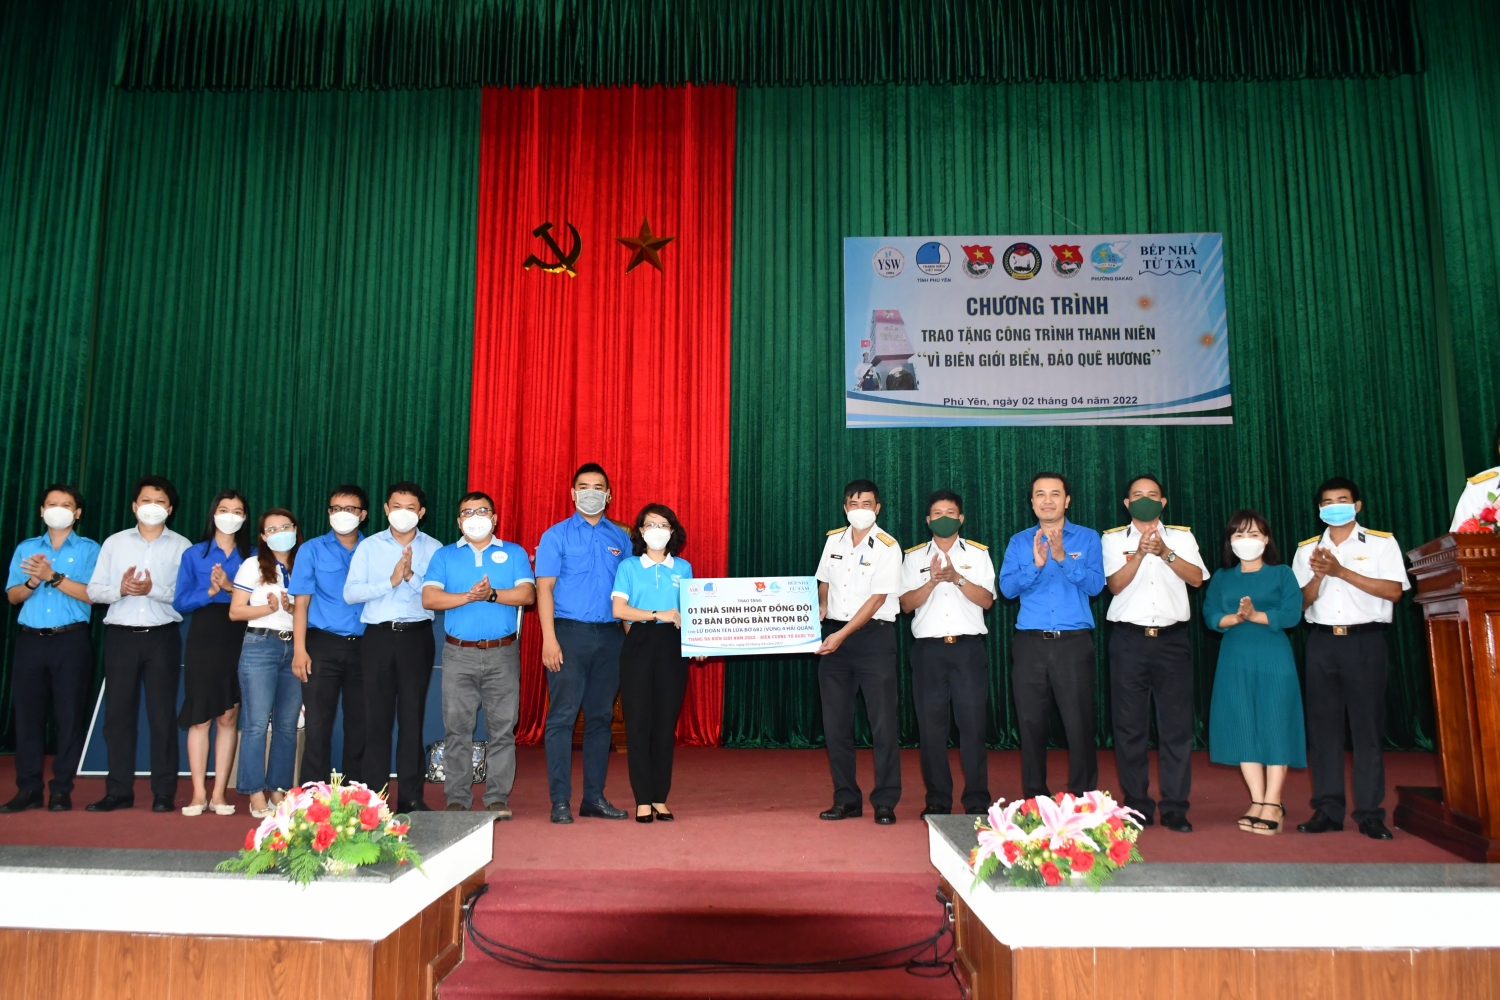 Đoàn trao tặng bảng tượng trưng công trình thanh niên “Nhà sinh hoạt đồng đội” và 02 bộ bàn bóng bàn cho cán bộ, chiến sỹ Lữ đoàn Tên lửa bờ 682 (Vùng 4 Hải Quân).